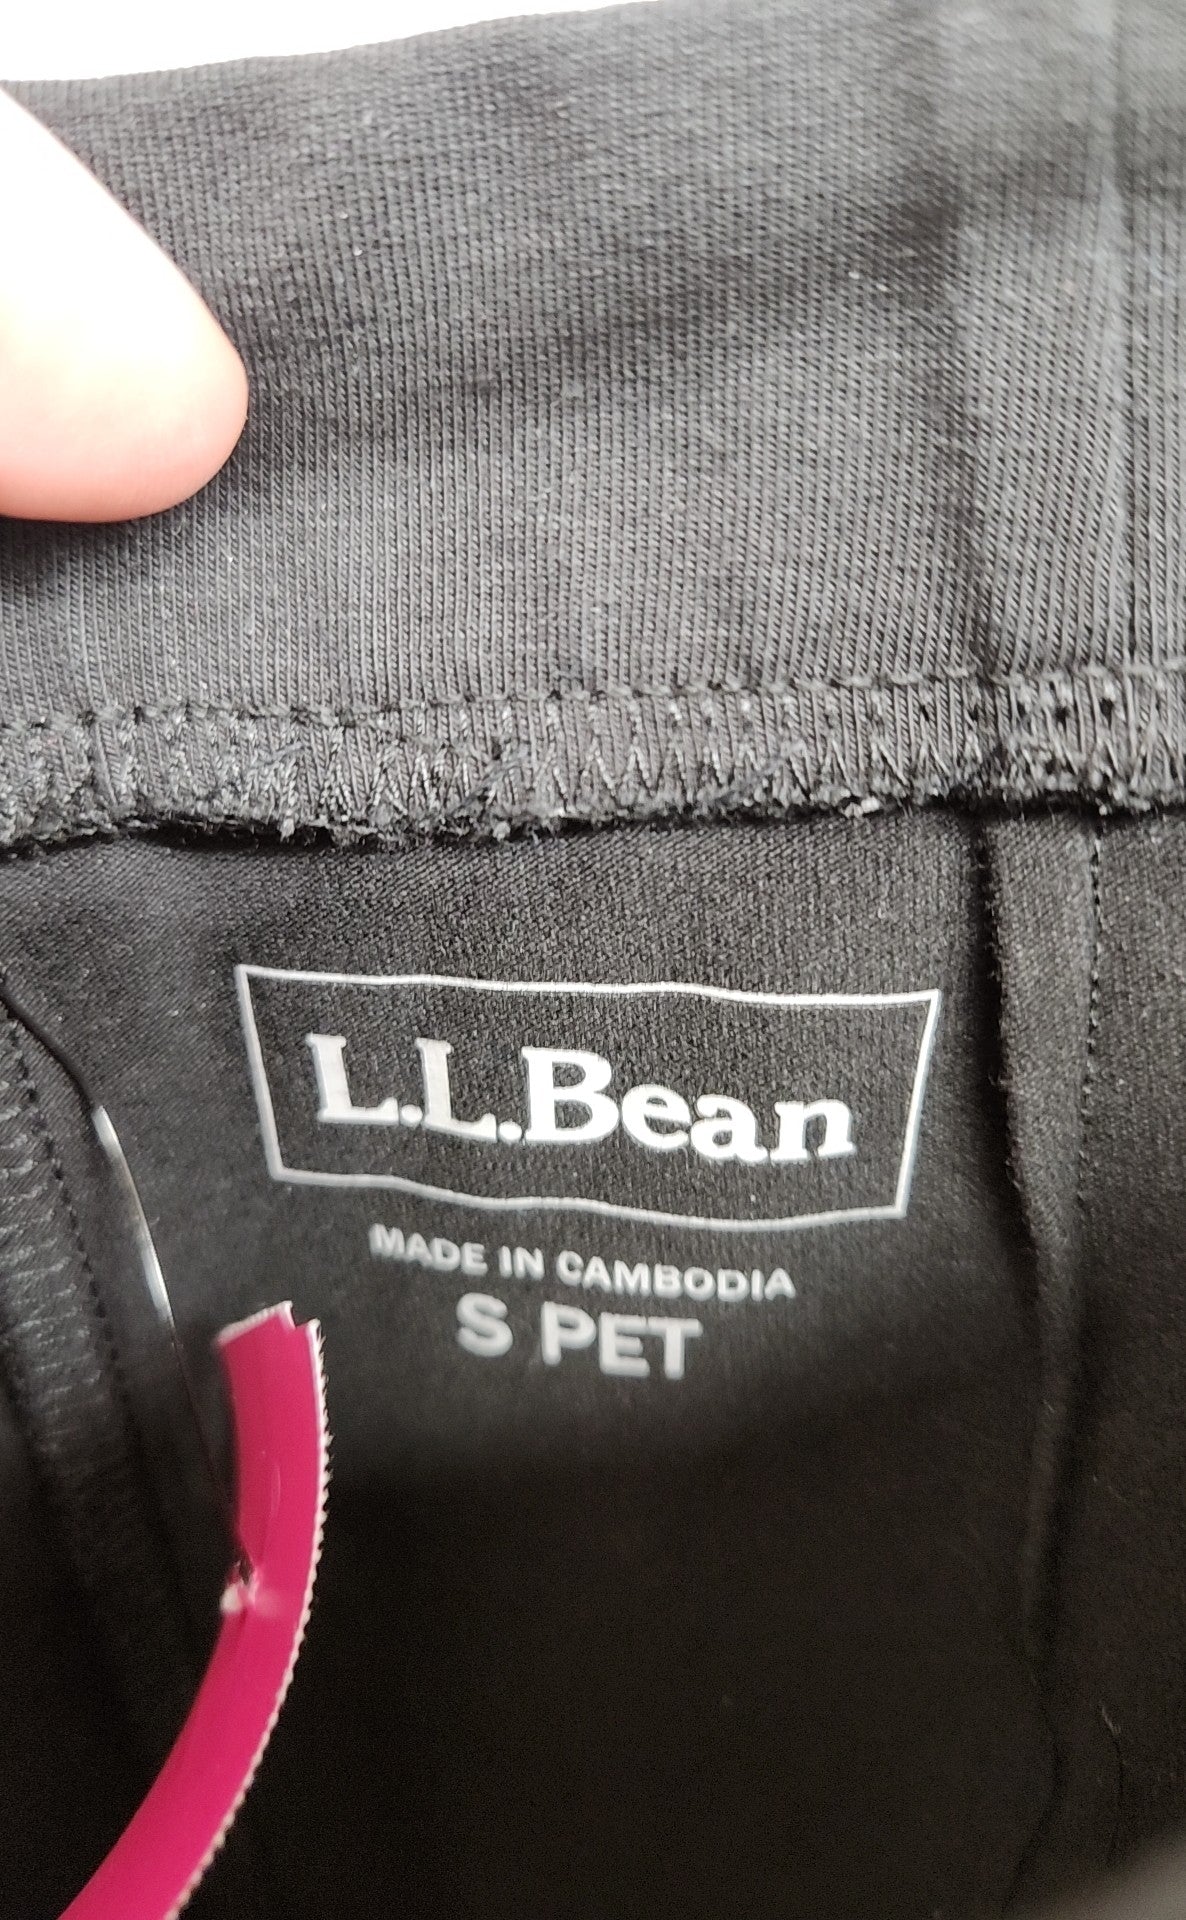 LL Bean Women's Size S Petite Black Pants